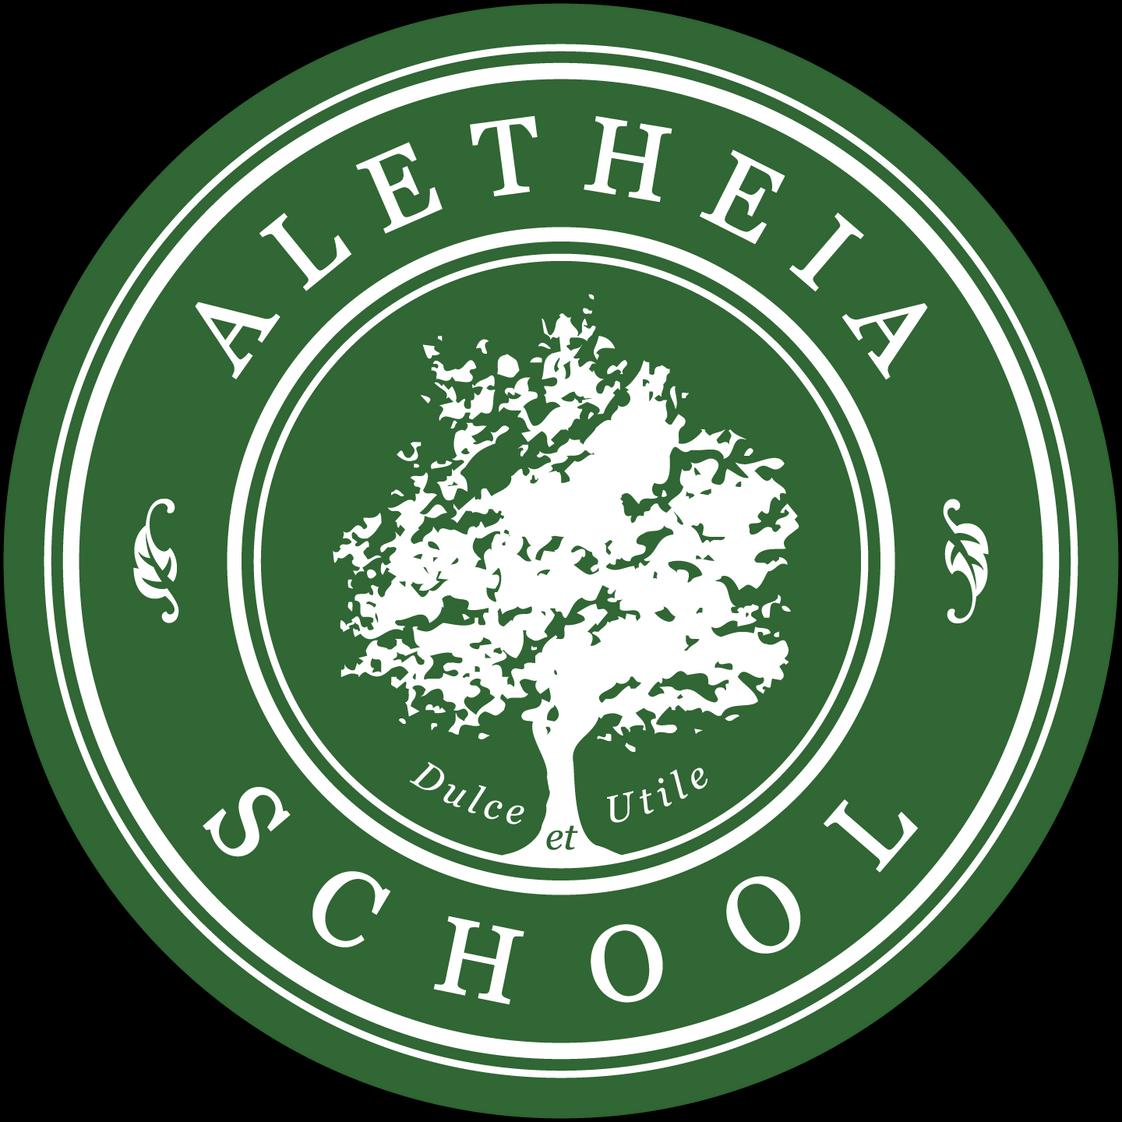 Aletheia School Photo - Aletheia School logo